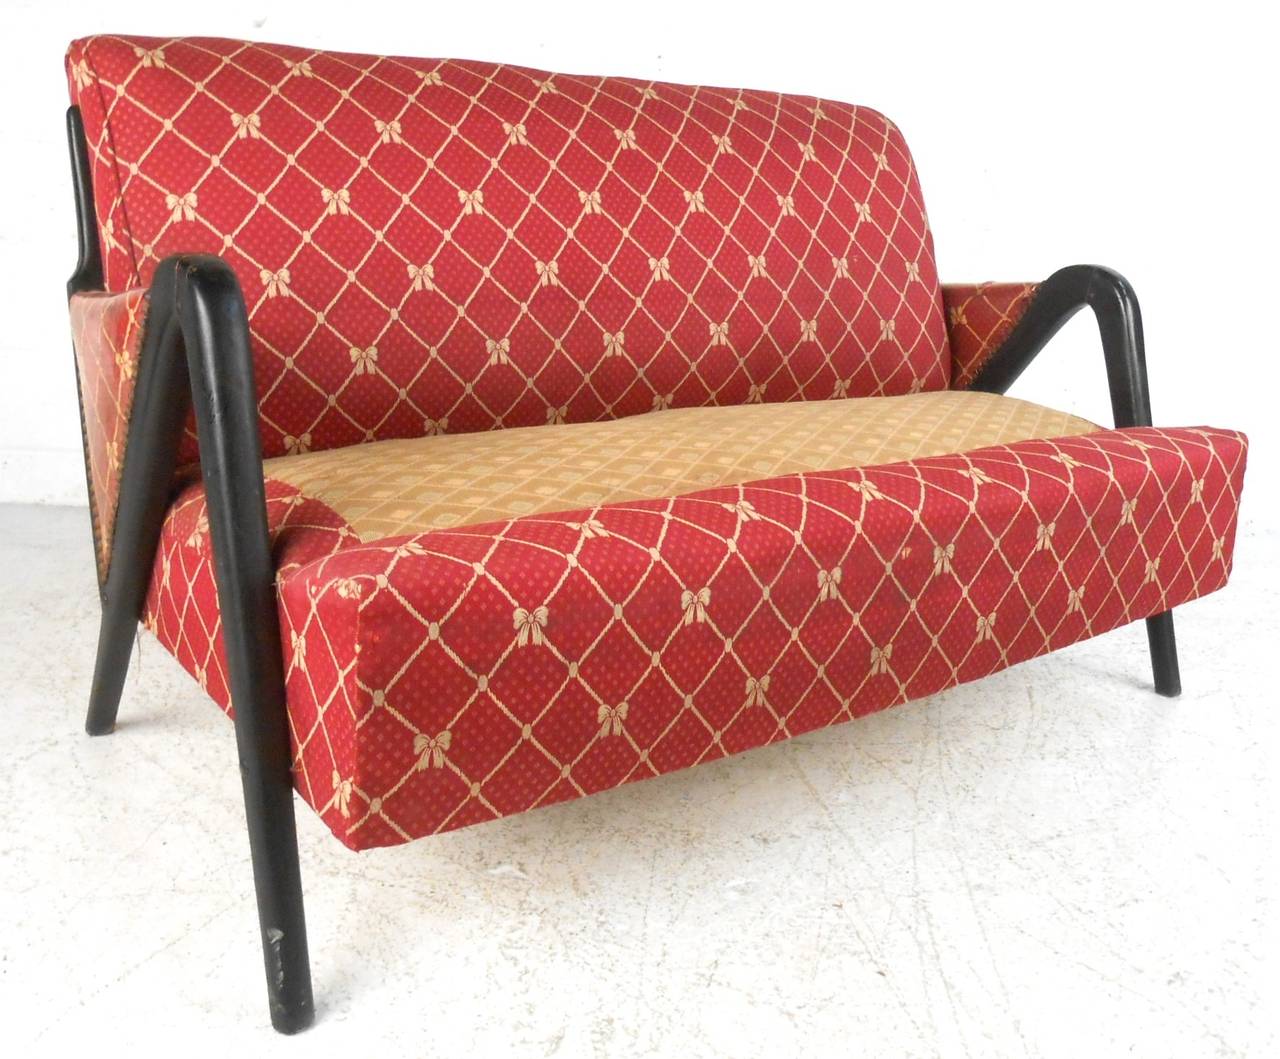 Dieses Sofa im italienischen Stil zeichnet sich durch einen einzigartigen skulpturalen Rahmen aus, der mit einem reichen Vintage-Stoff bezogen ist. Das fehlende originale Sitzkissen muss ersetzt werden, eine einzigartige Sitzgelegenheit für zu Hause